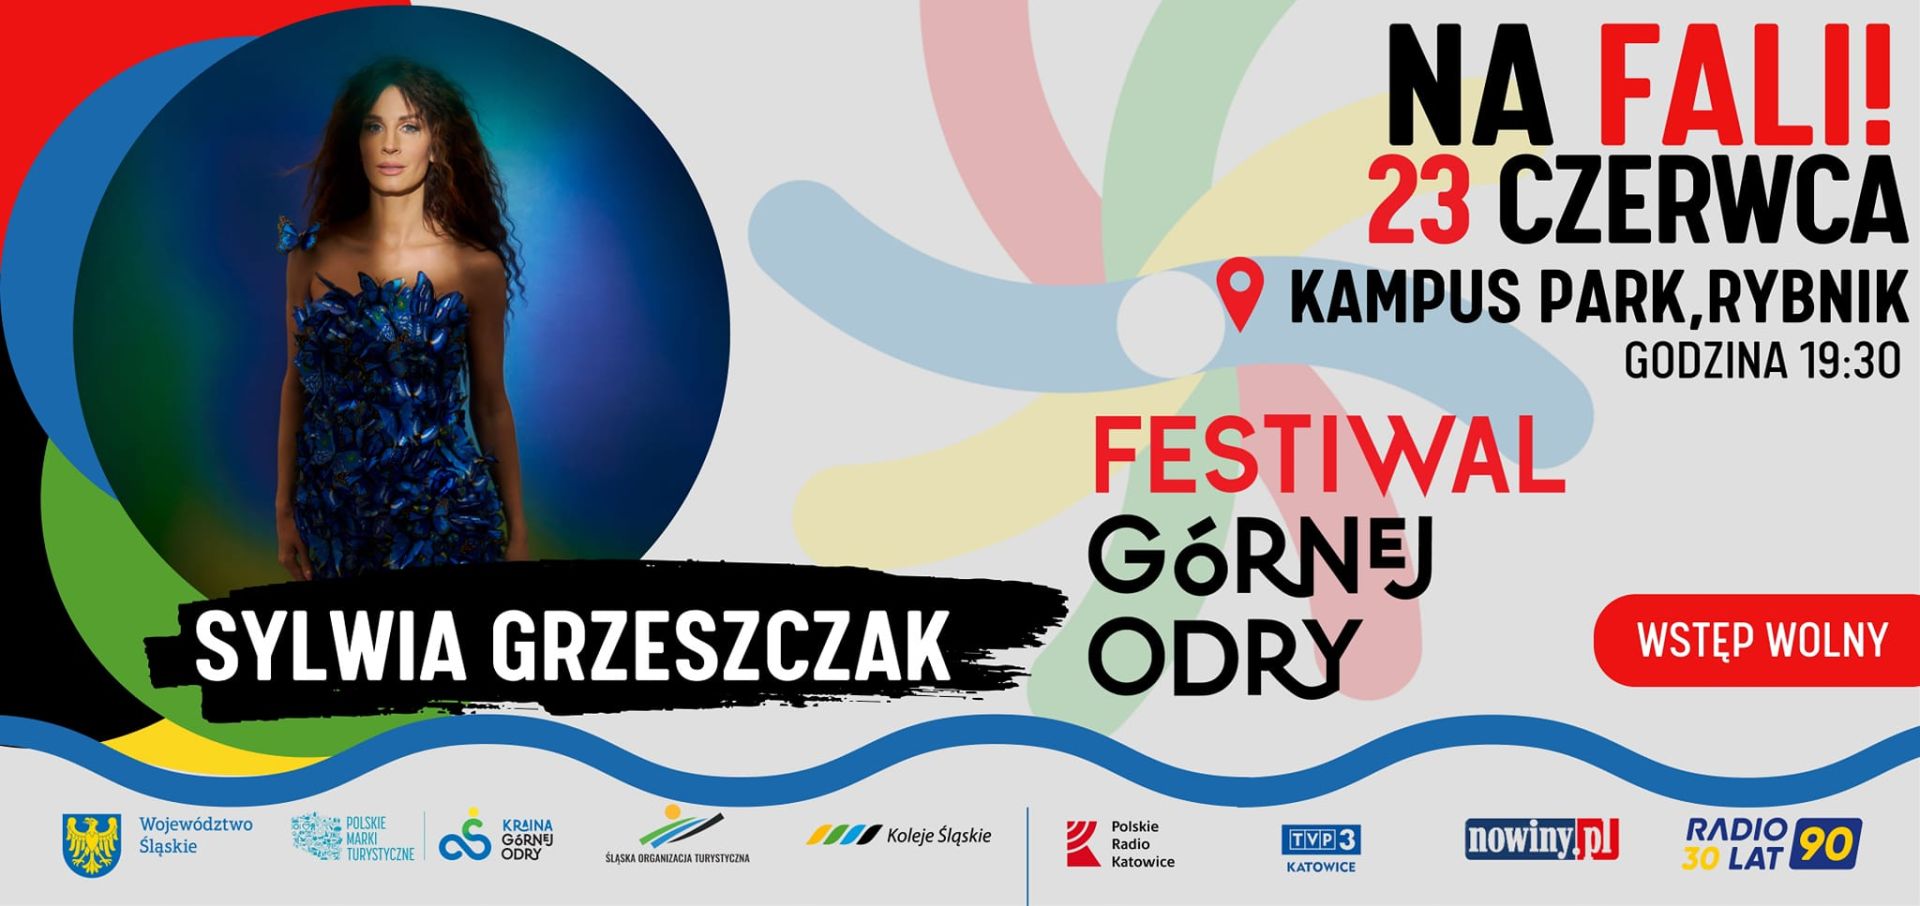 Wielki finał festiwalu odbędzie się w Rybniku. Na scenie wystąpi m.in. Sylwia Grzeszczak. Zdj. mat. prasowe